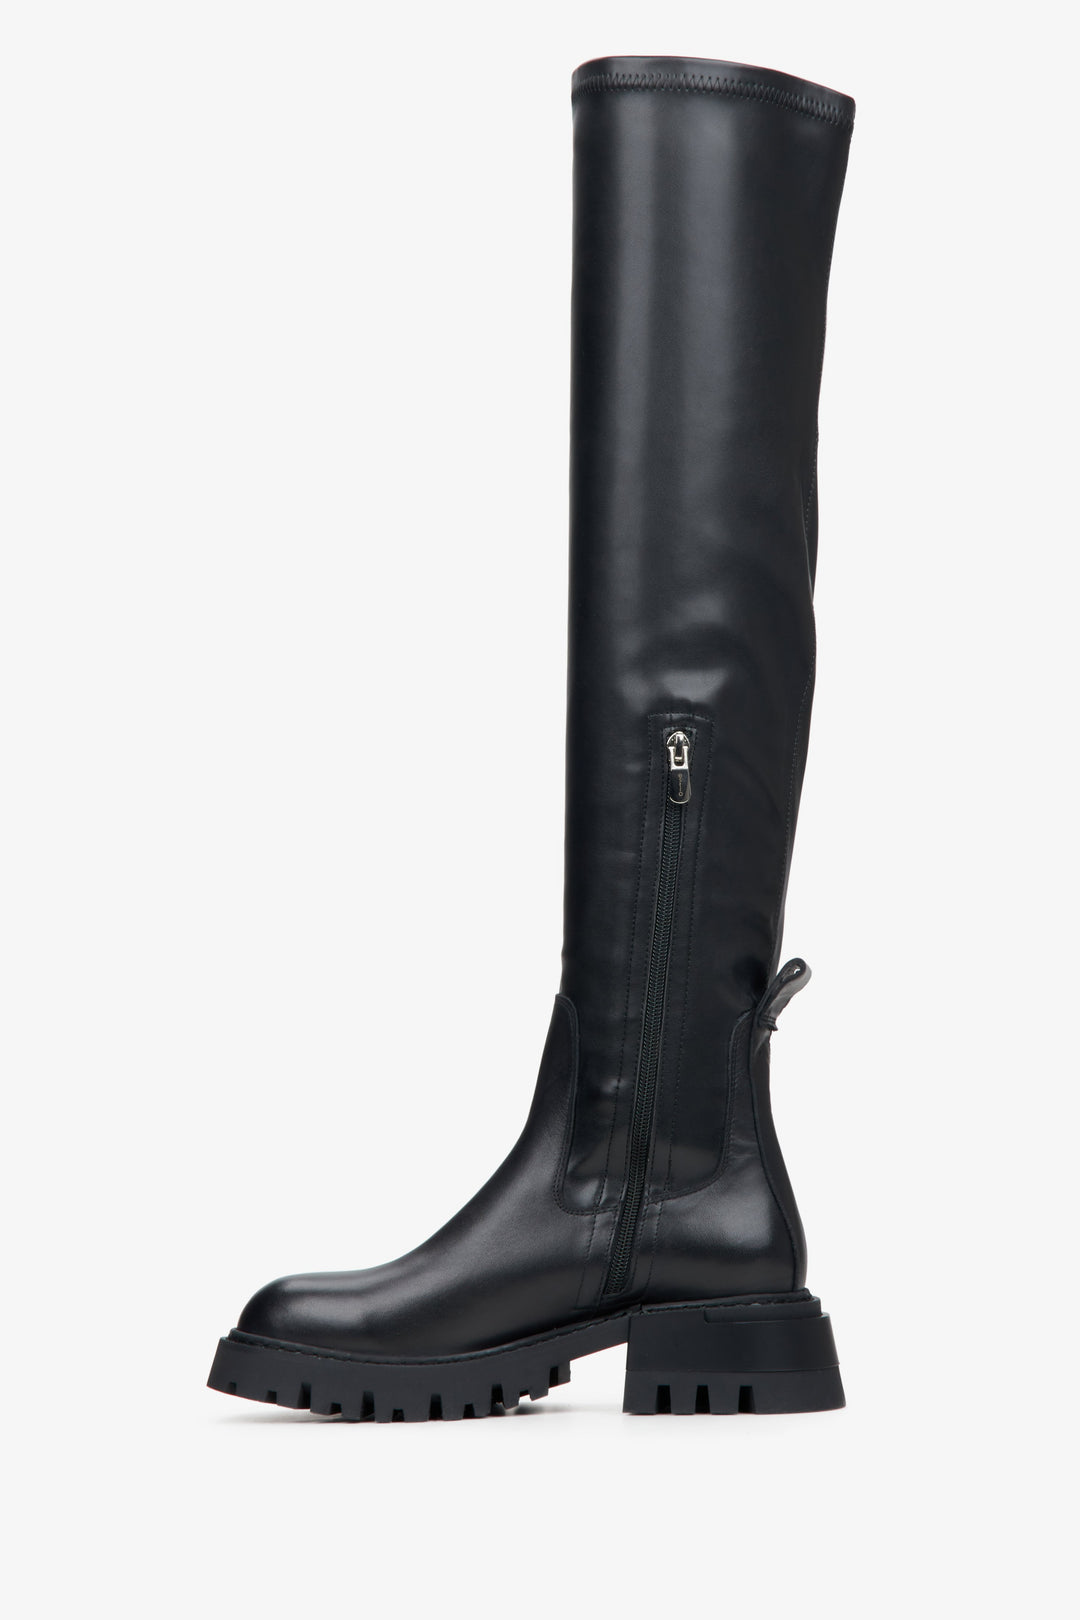 Women's black leather boots by Estro - shoe profile.